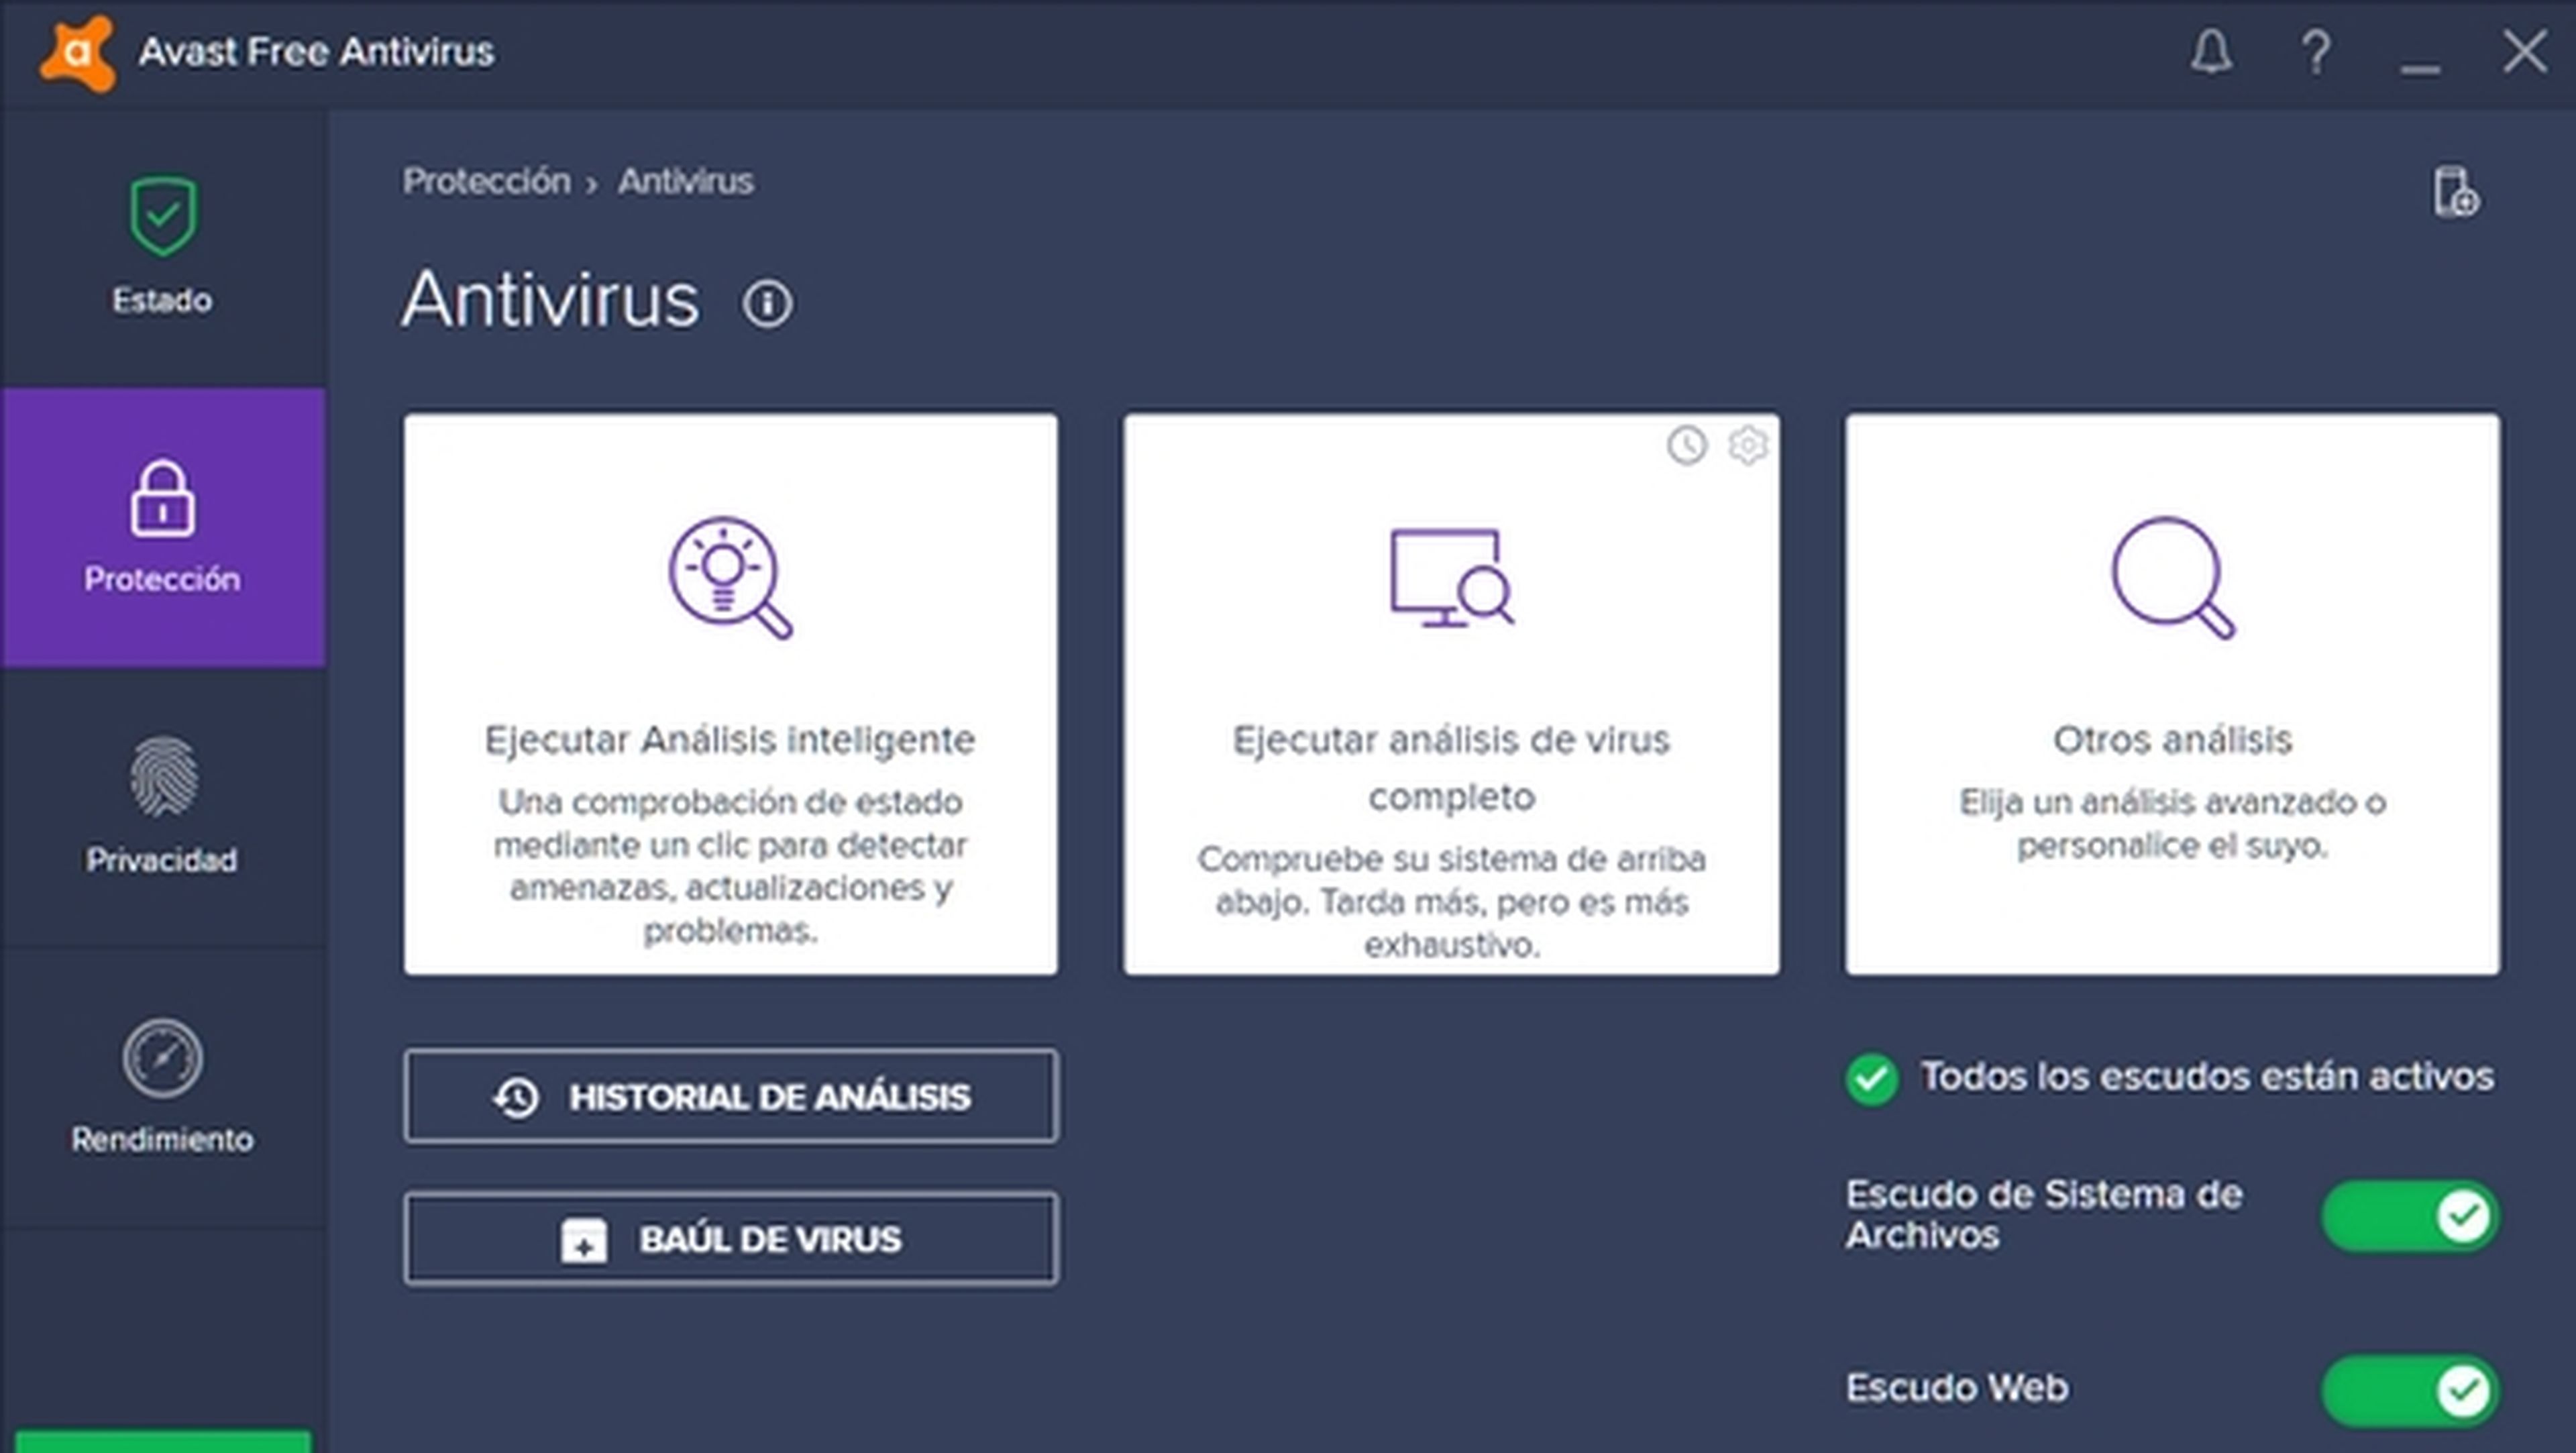 Antivirus gratuito para Windows Avast Free Antivirus 2017